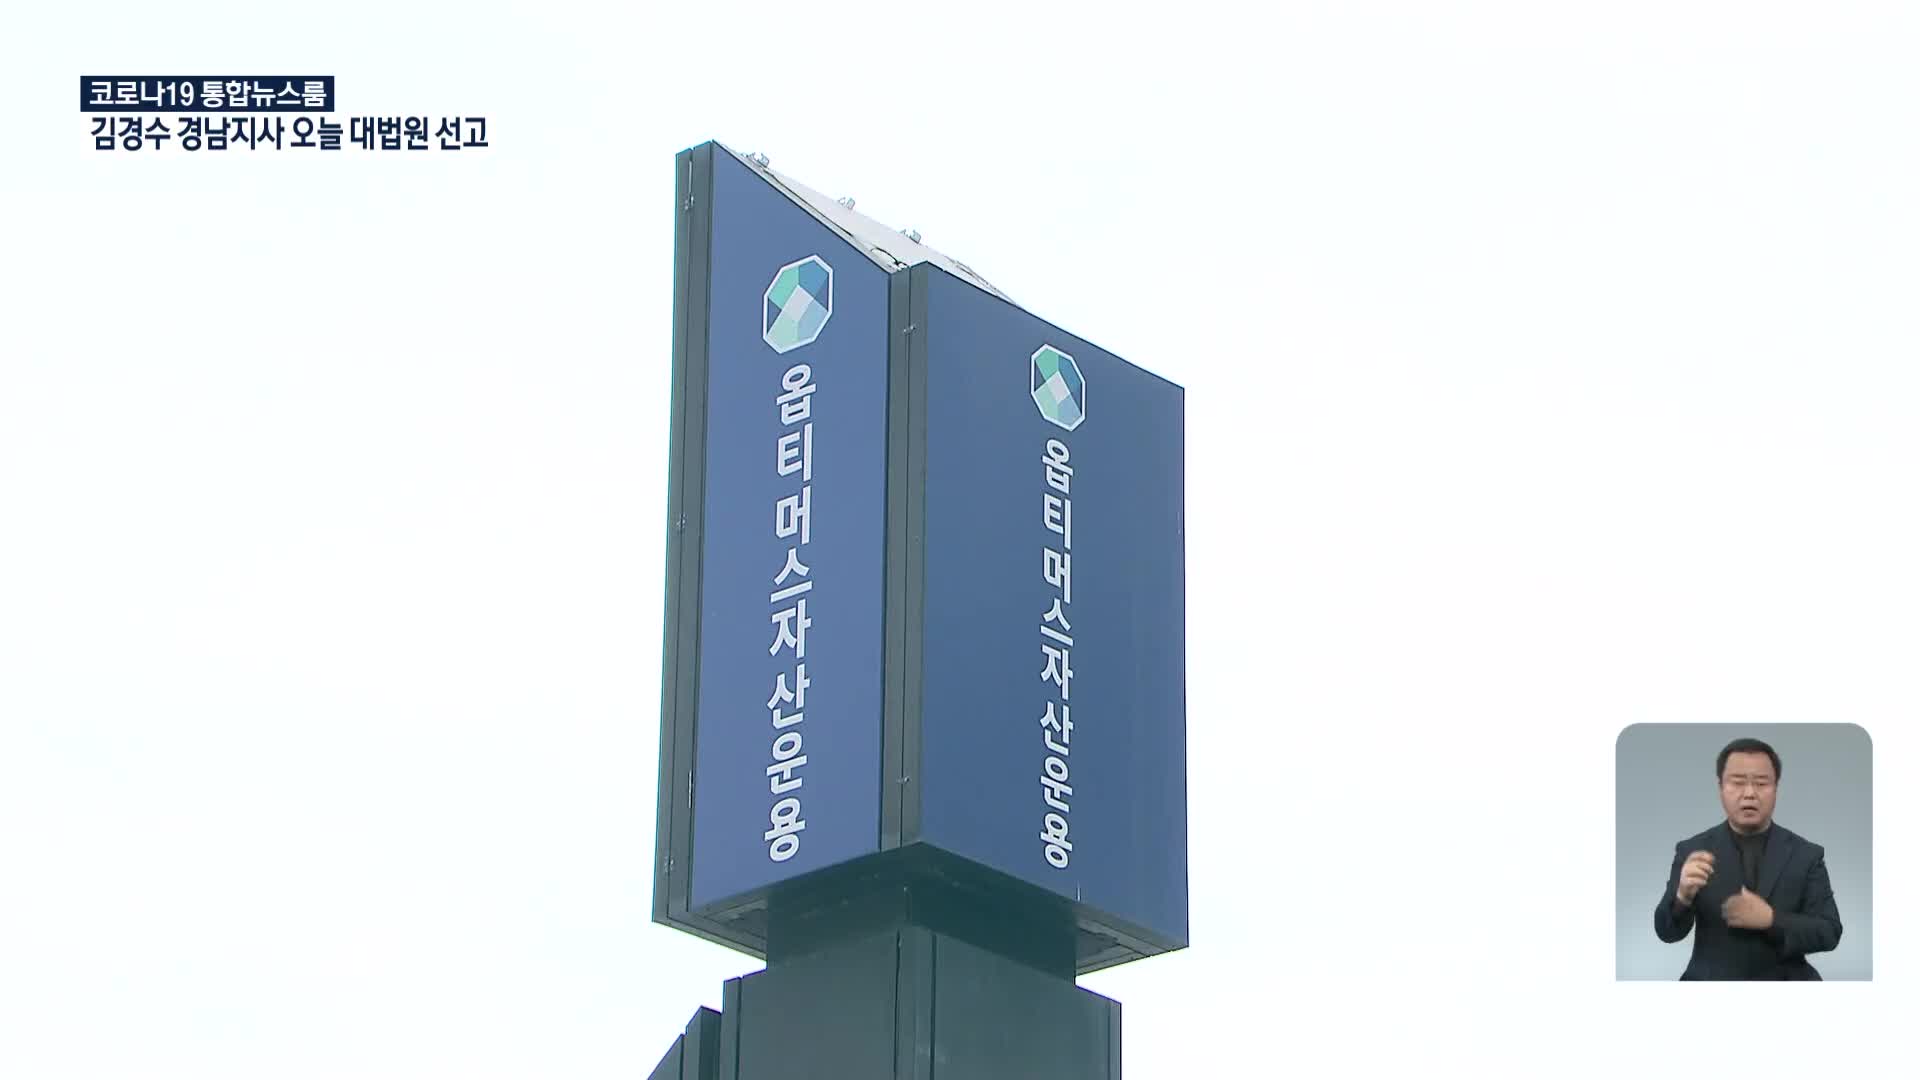 ‘1조 원대 펀드 사기’ 옵티머스 김재현 1심서 징역 25년